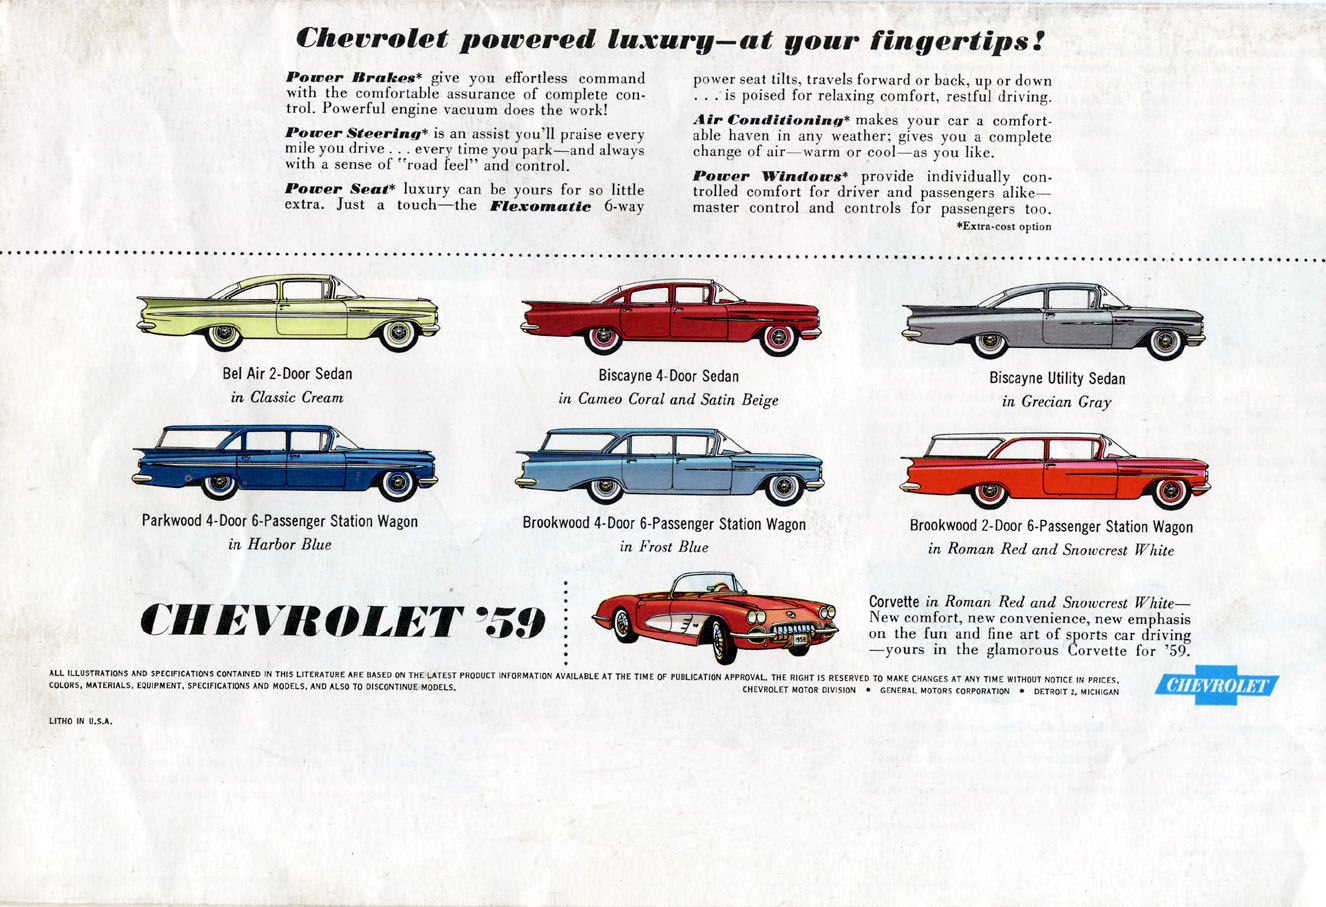 1959 Chervrolet Foldout-04